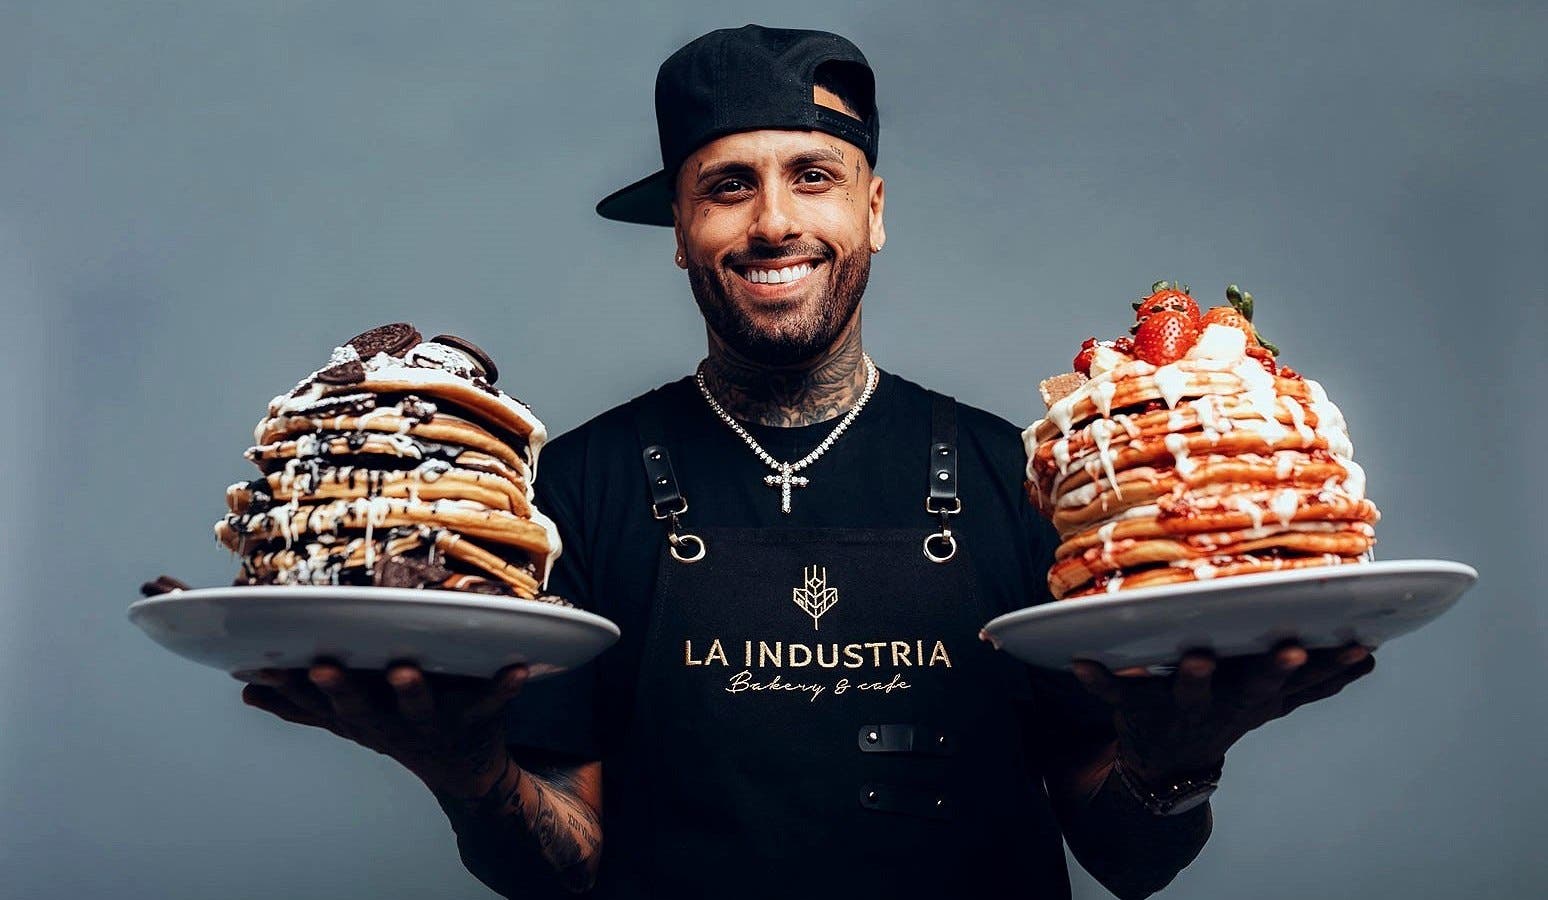 El “goloso” reguetonero Nicky Jam tendrá su propia panadería en Miami